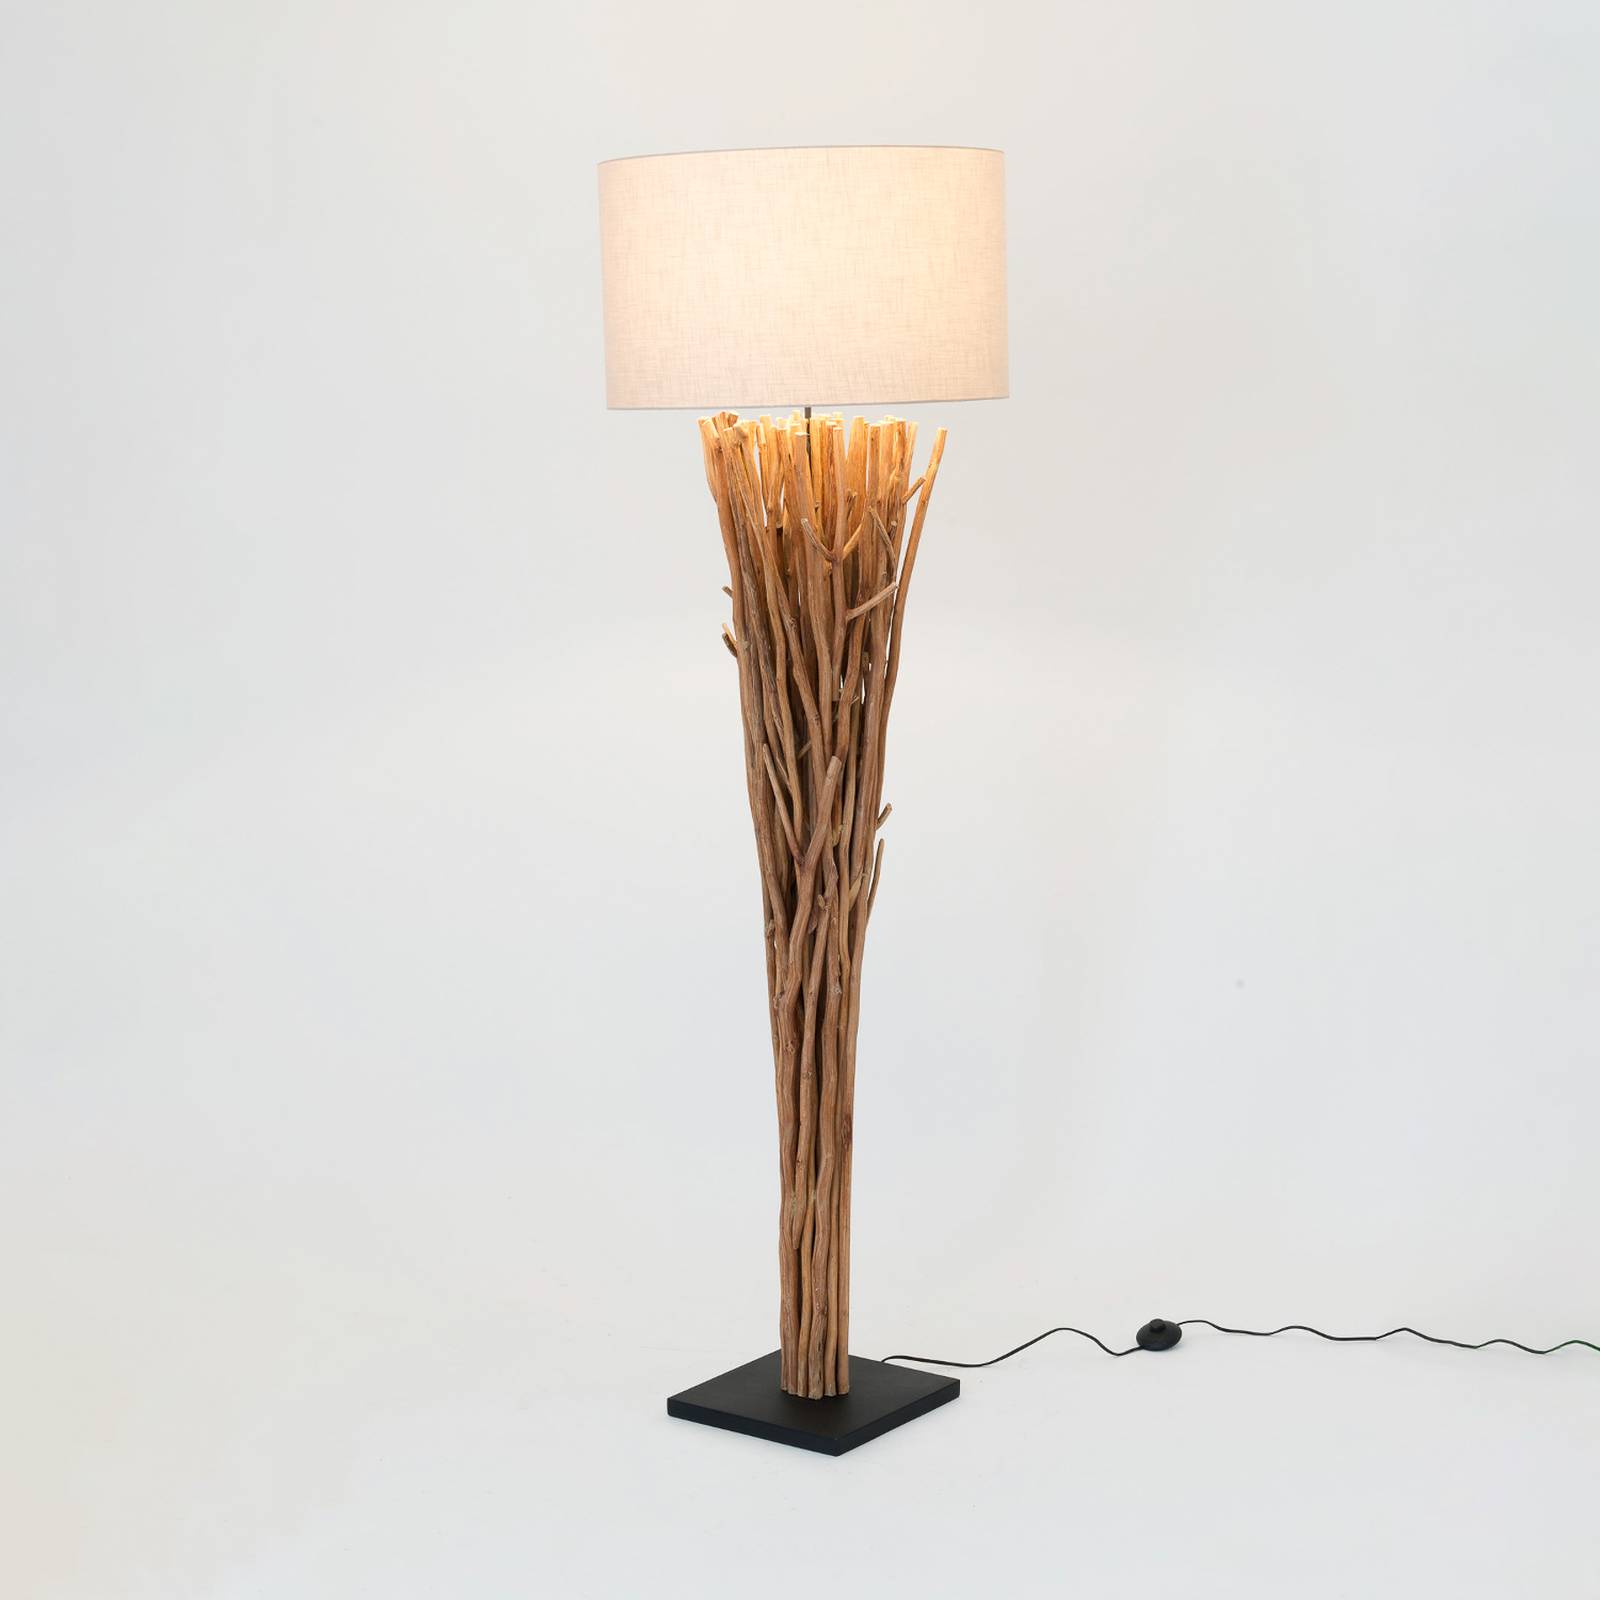 E-shop Stojacia lampa Palmaria, farba dreva/béžová, výška 177 cm, drevo